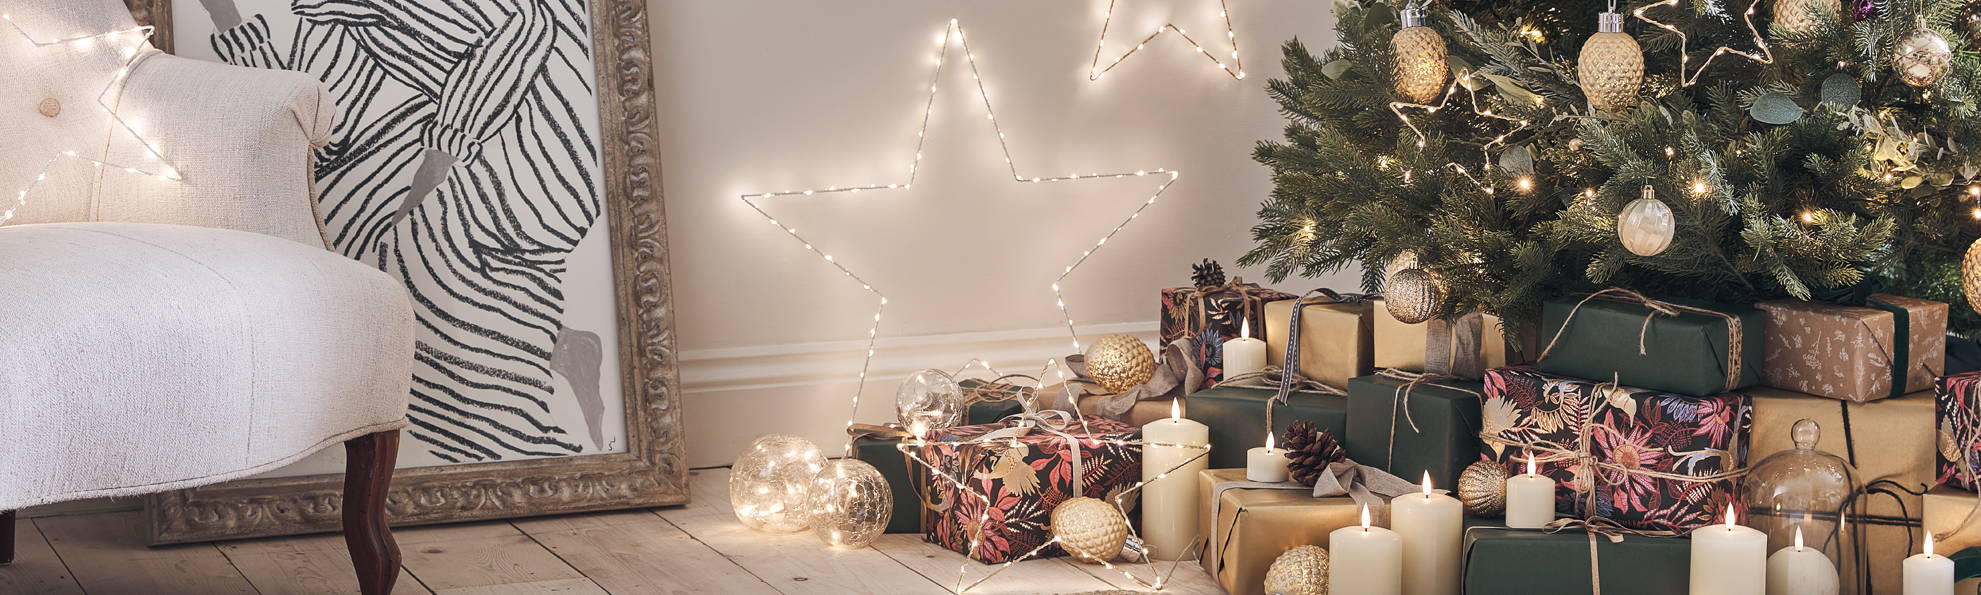 Sapin de nöel décoré par des boules dorées, avec des cadeaux et des étoiles lumineuse dans le salon. 